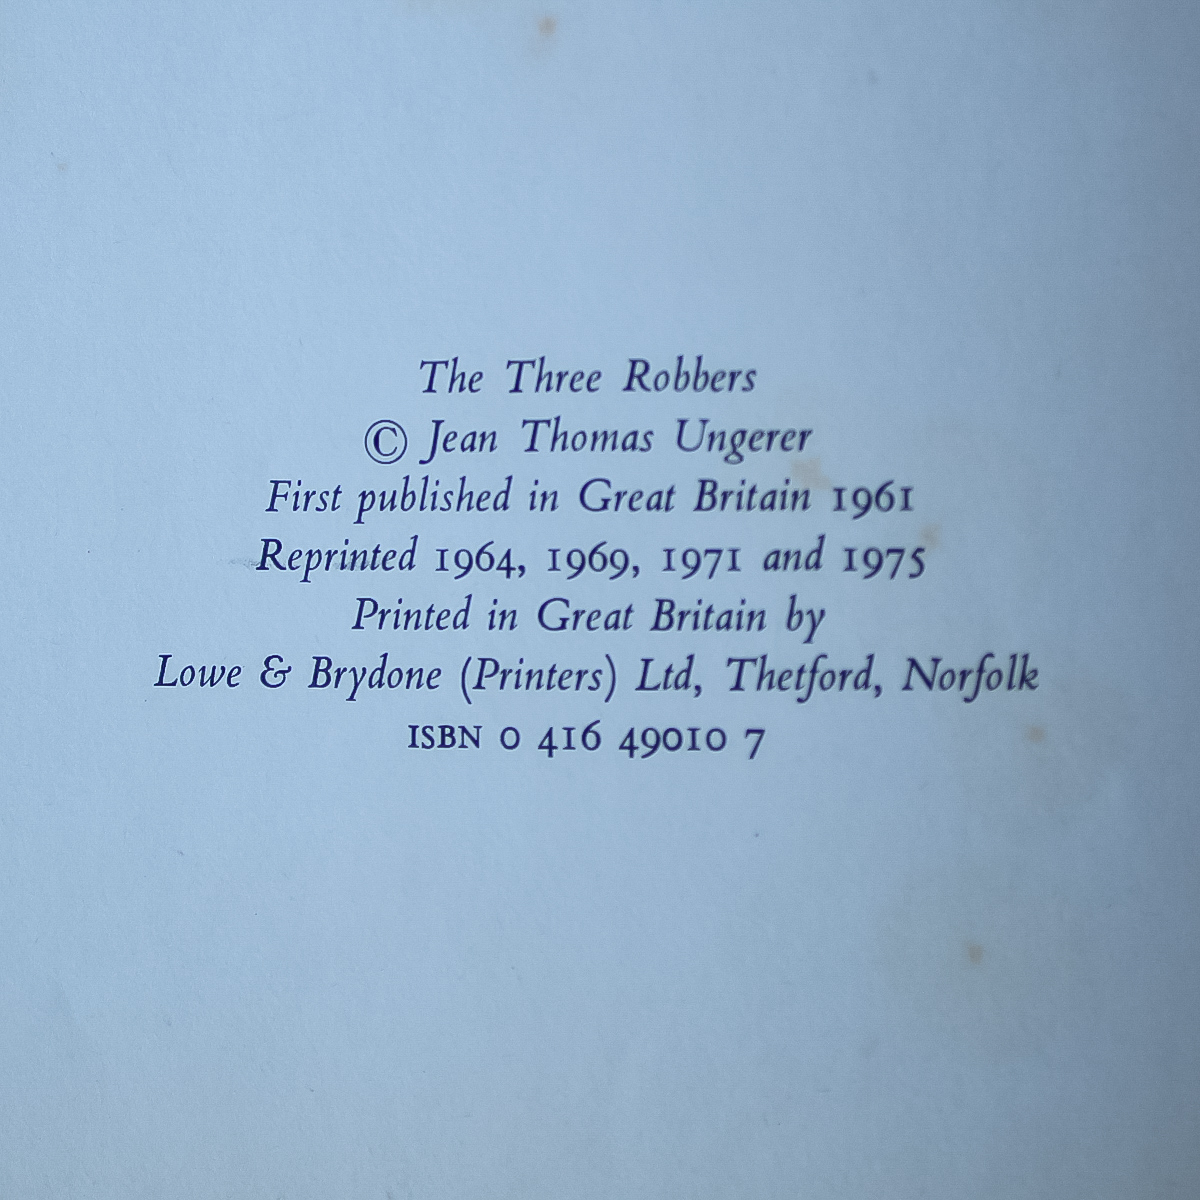 すてきな三にんぐみ 英語 イギリス 1975年 THE 3 ROBBERS TOMI UNGERER UK トミアンゲラー トミーウンゲラー 絵本 洋書 アート デザイン